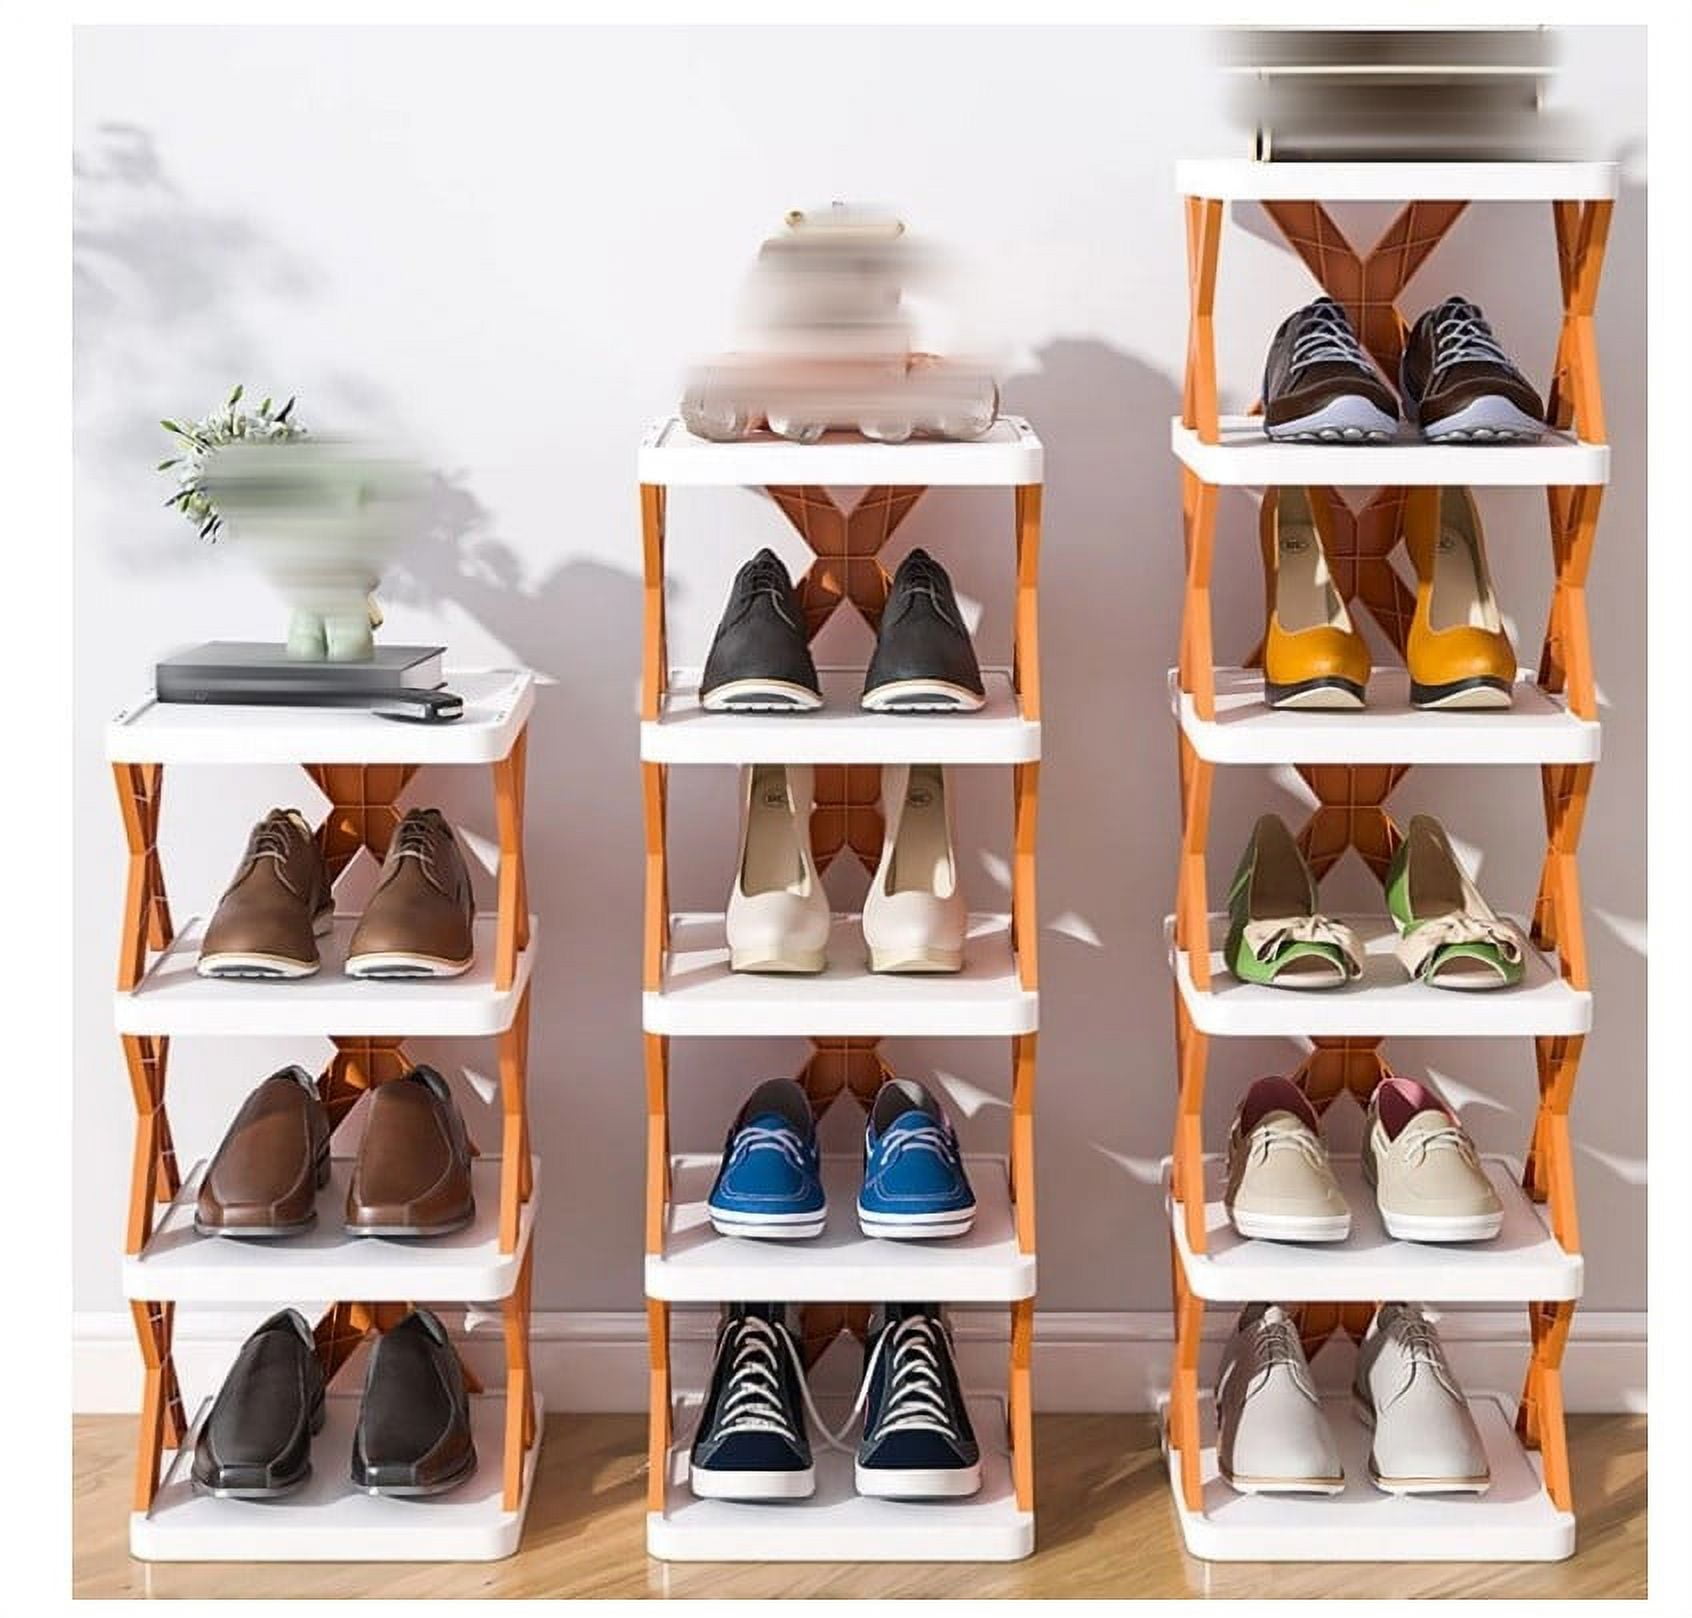 Bata: 'Sneaking' Into Your Shoe Shelves | Entrepreneur